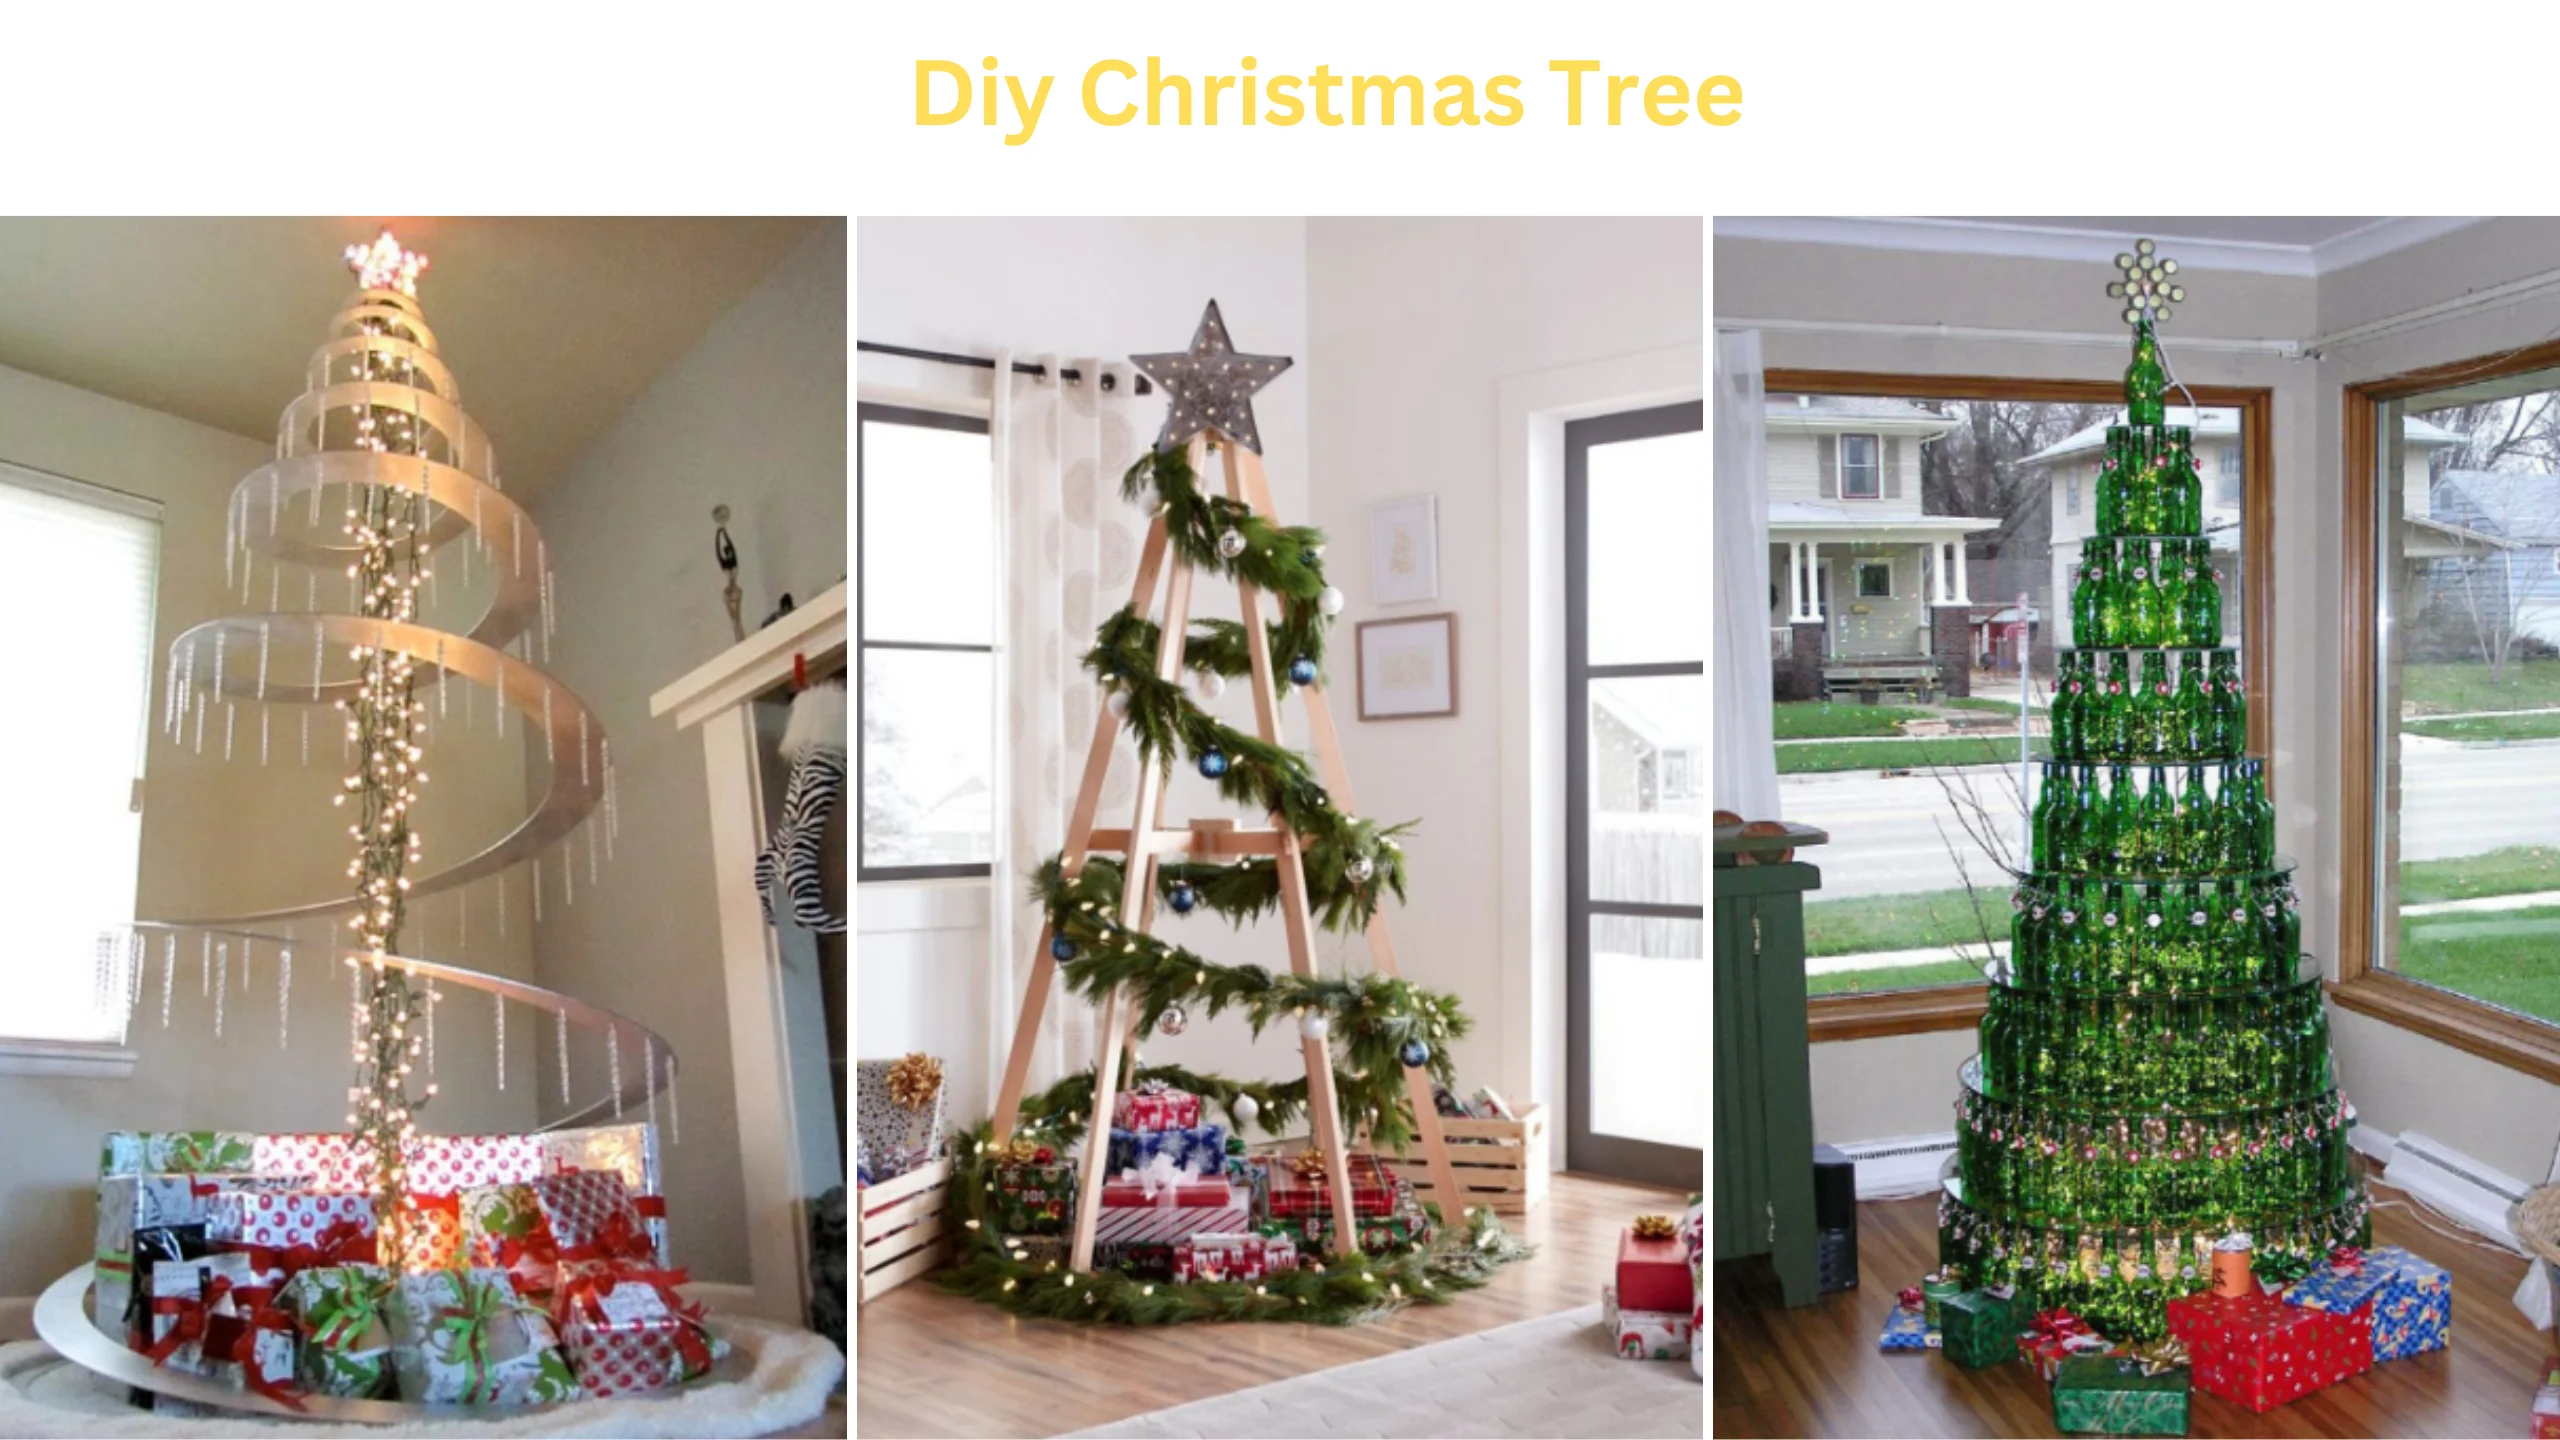 Diy Christmas tree